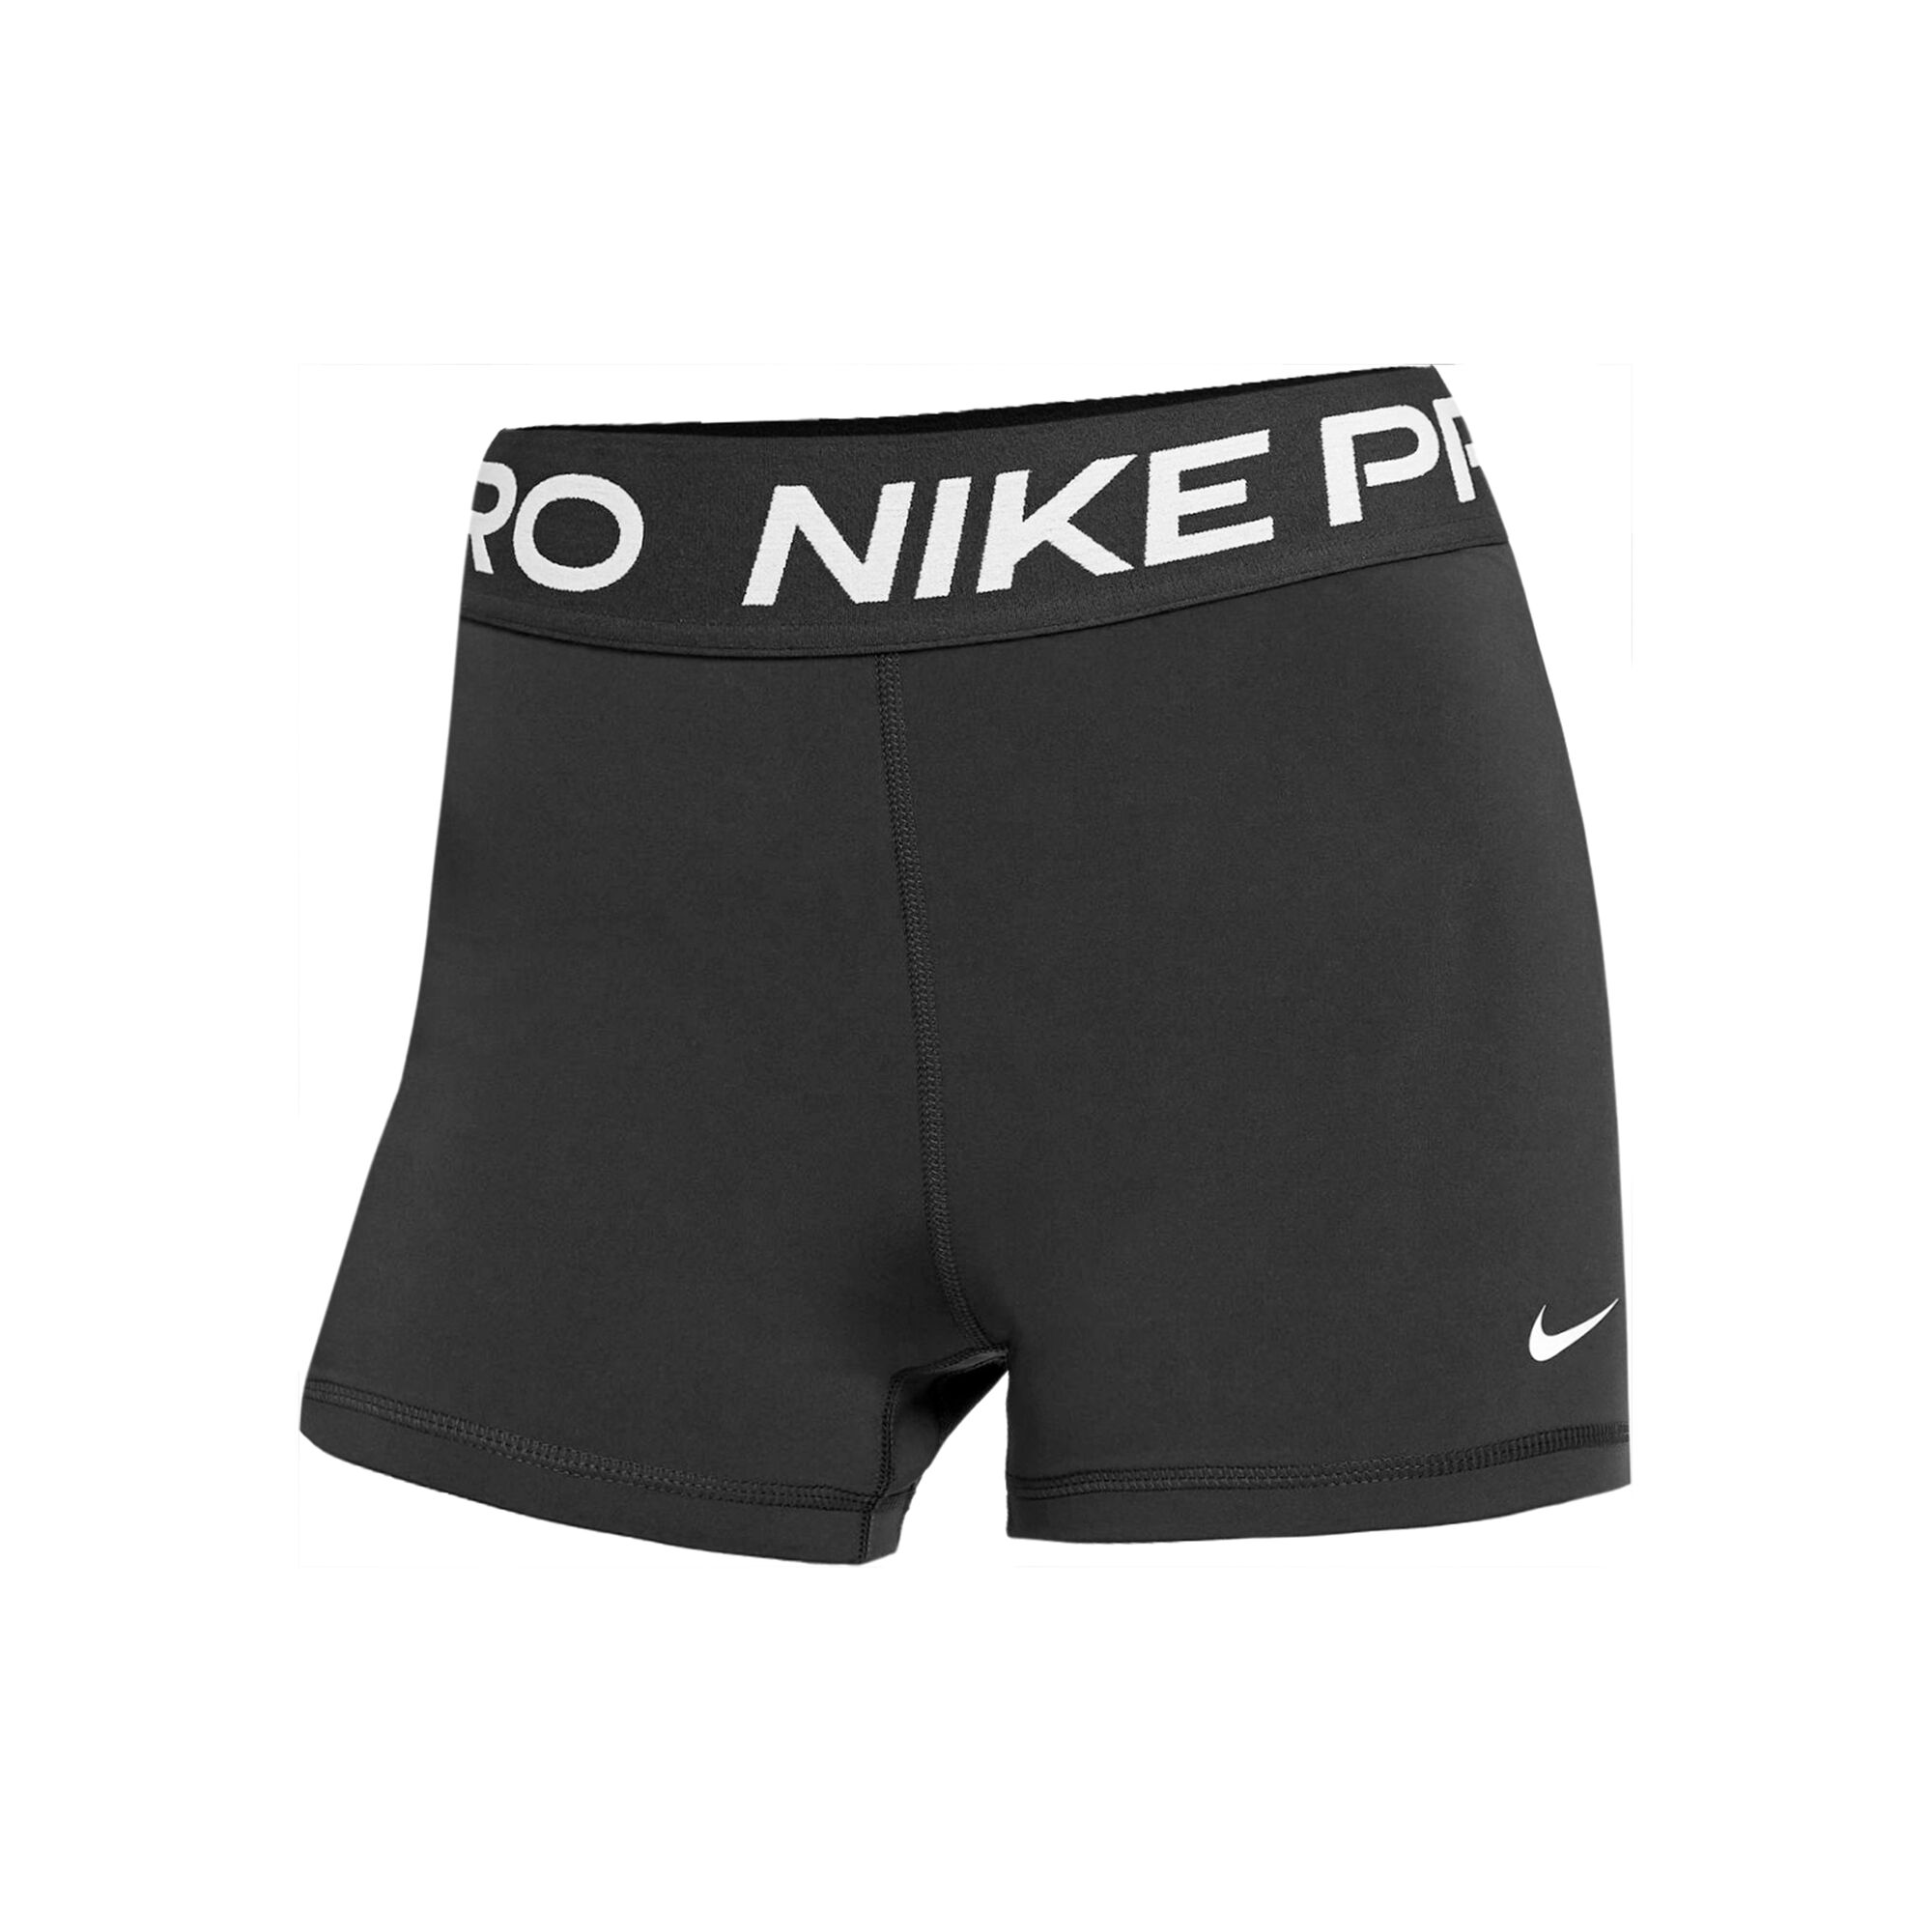 Nike Pro Shorts Mujeres - Negro, compra |